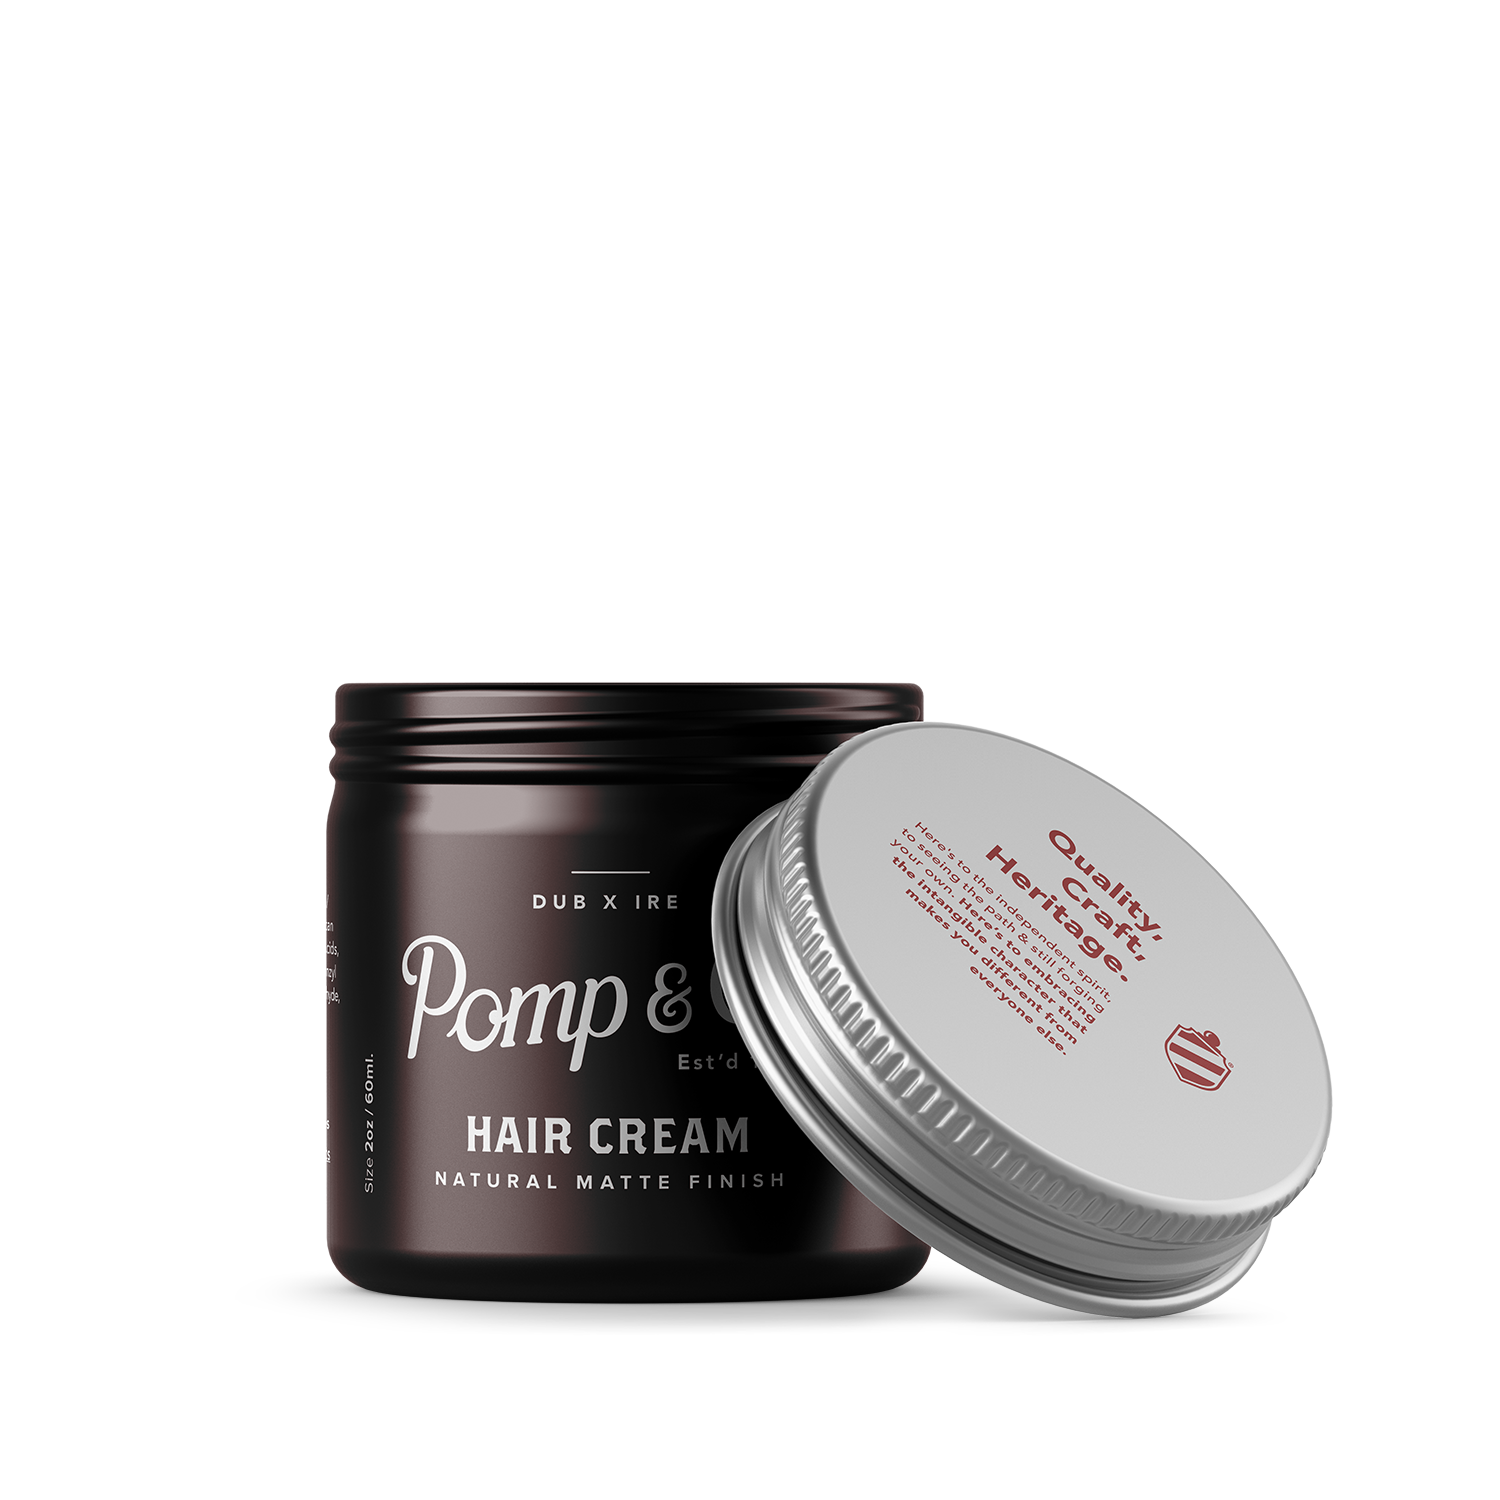 Hair Cream 60ml for Men - €21.00 | Pomp & Co.